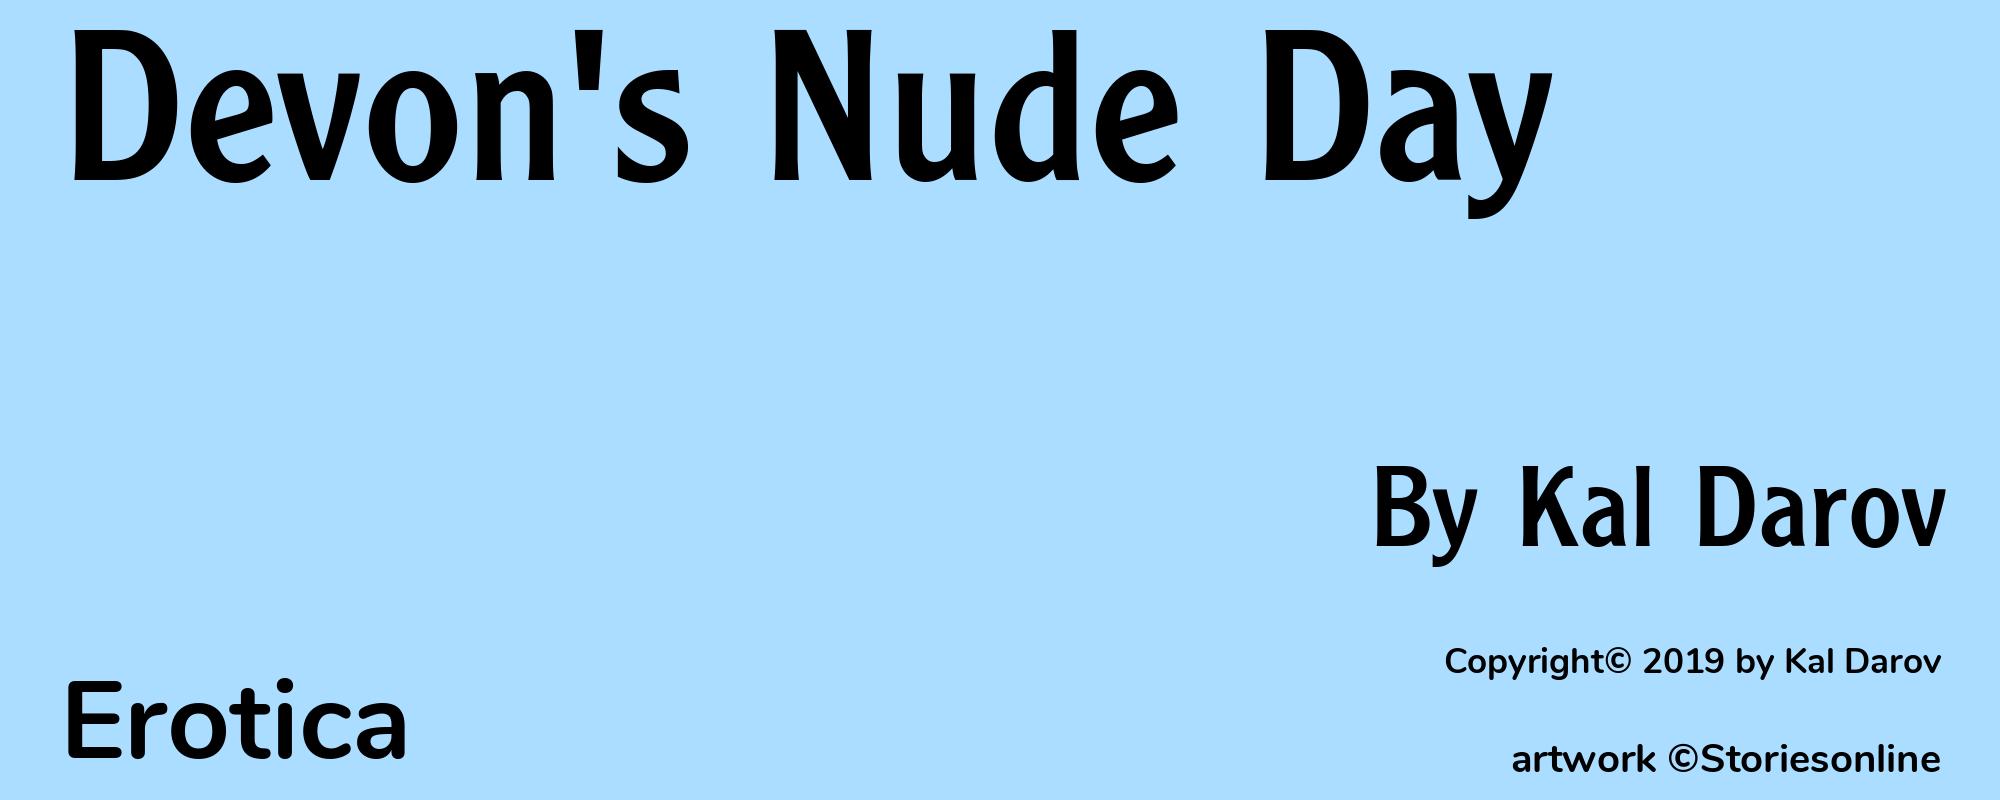 Devon's Nude Day - Cover